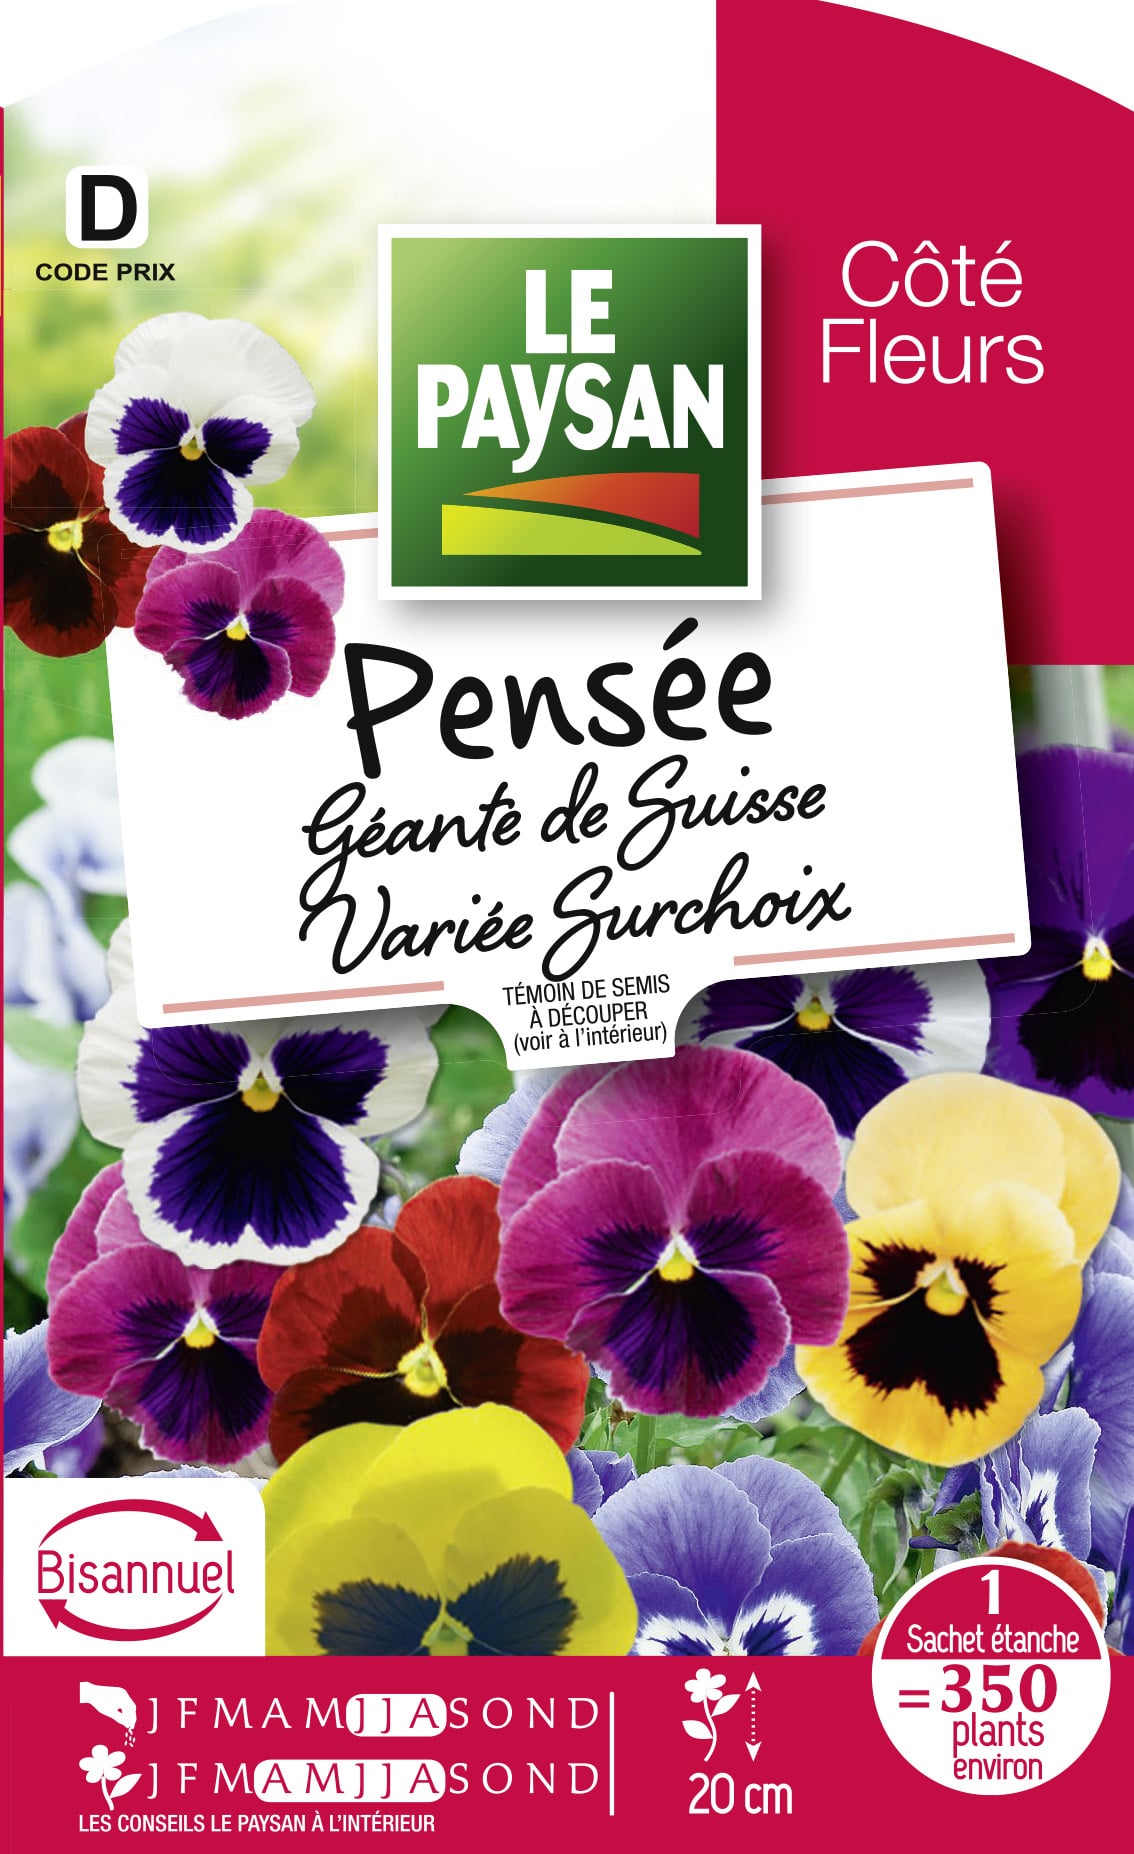 PENSEE - GEANTE DE SUISSE VARIEE SURCHOIX - Le Paysan - Semences et  accessoires pour auxiliaires du jardin